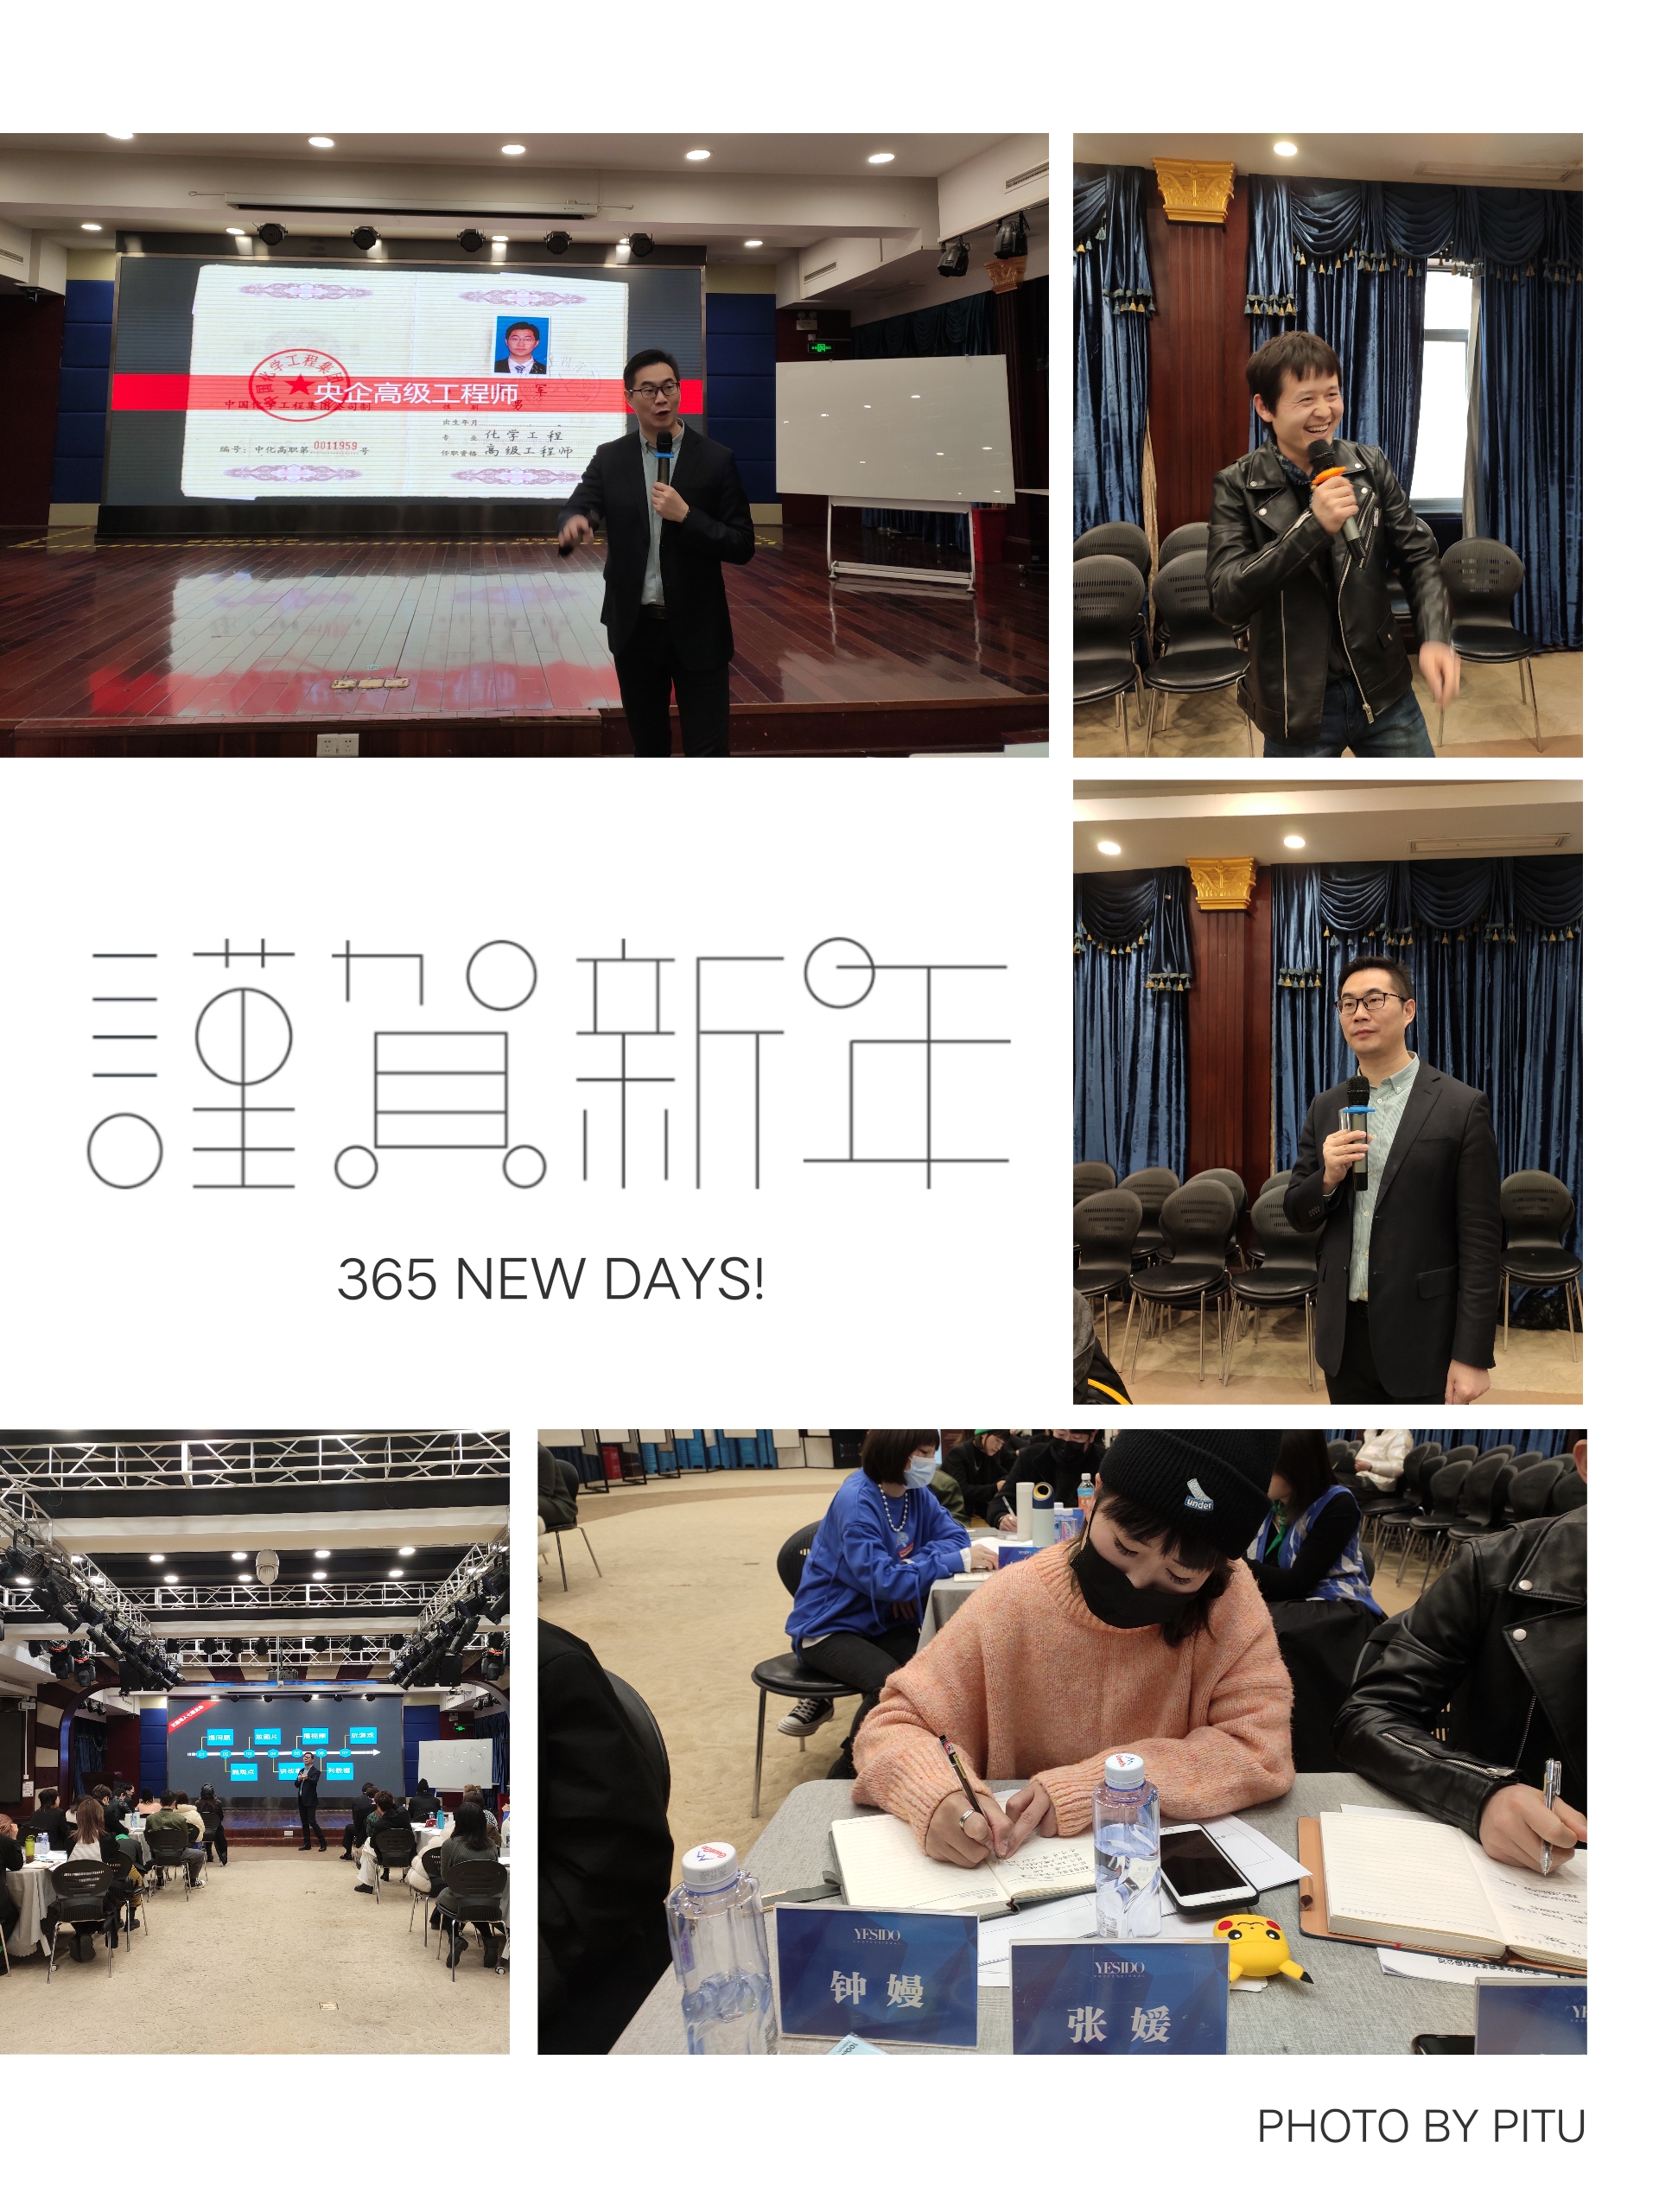 吴军老师1月20日给武汉某公司进行企业内训《TTT授课技巧与逻辑结构》课程圆满结束。